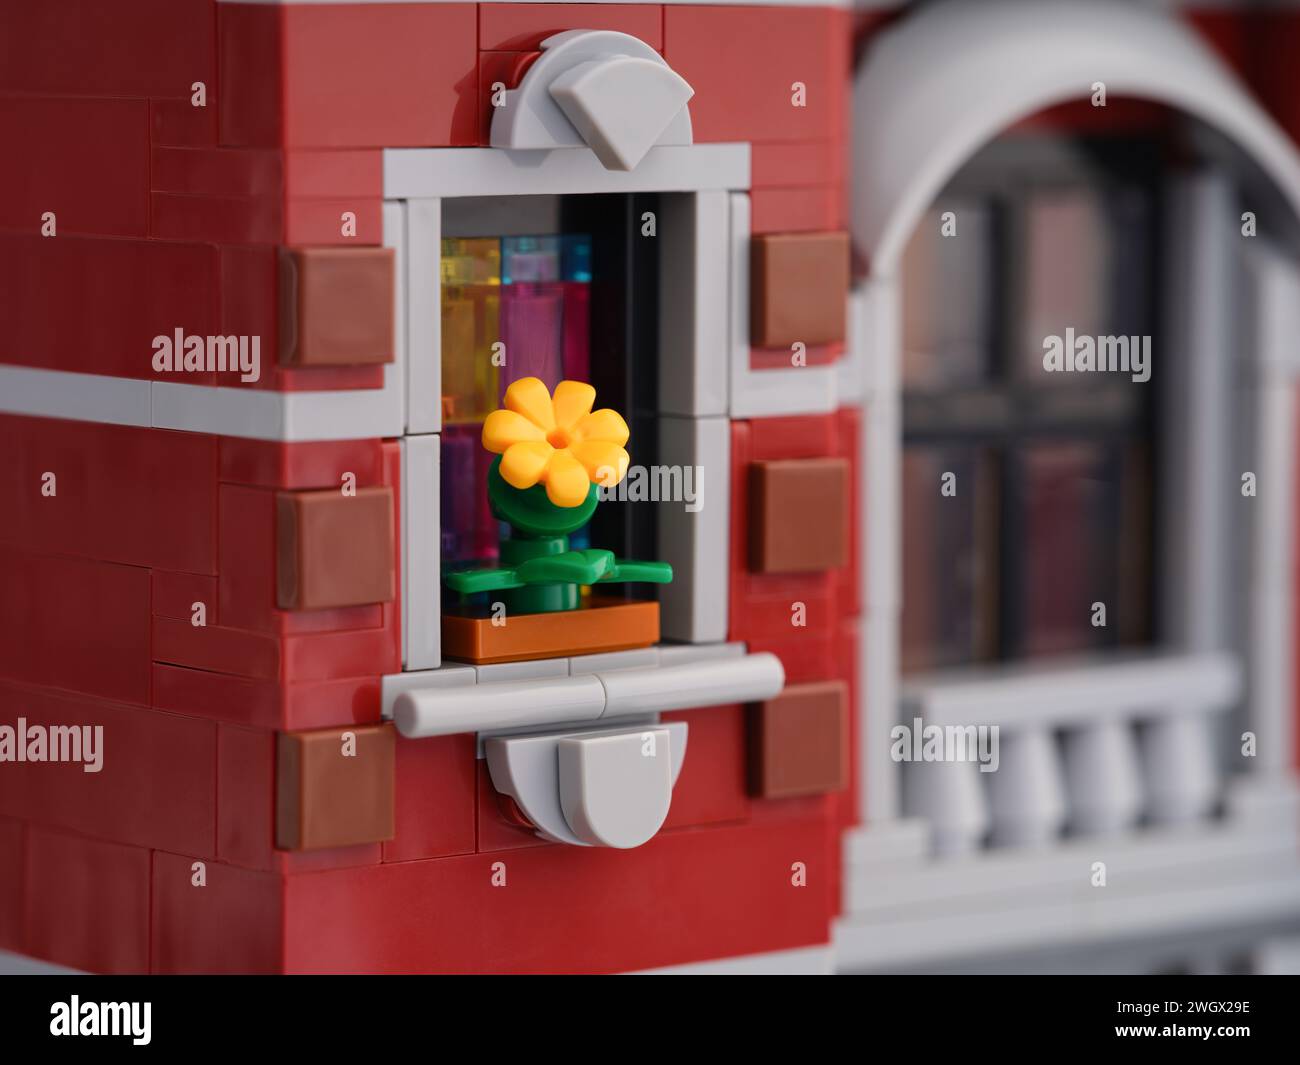 MOC LEGO® flores rojas, amarillas y rosas en una maceta